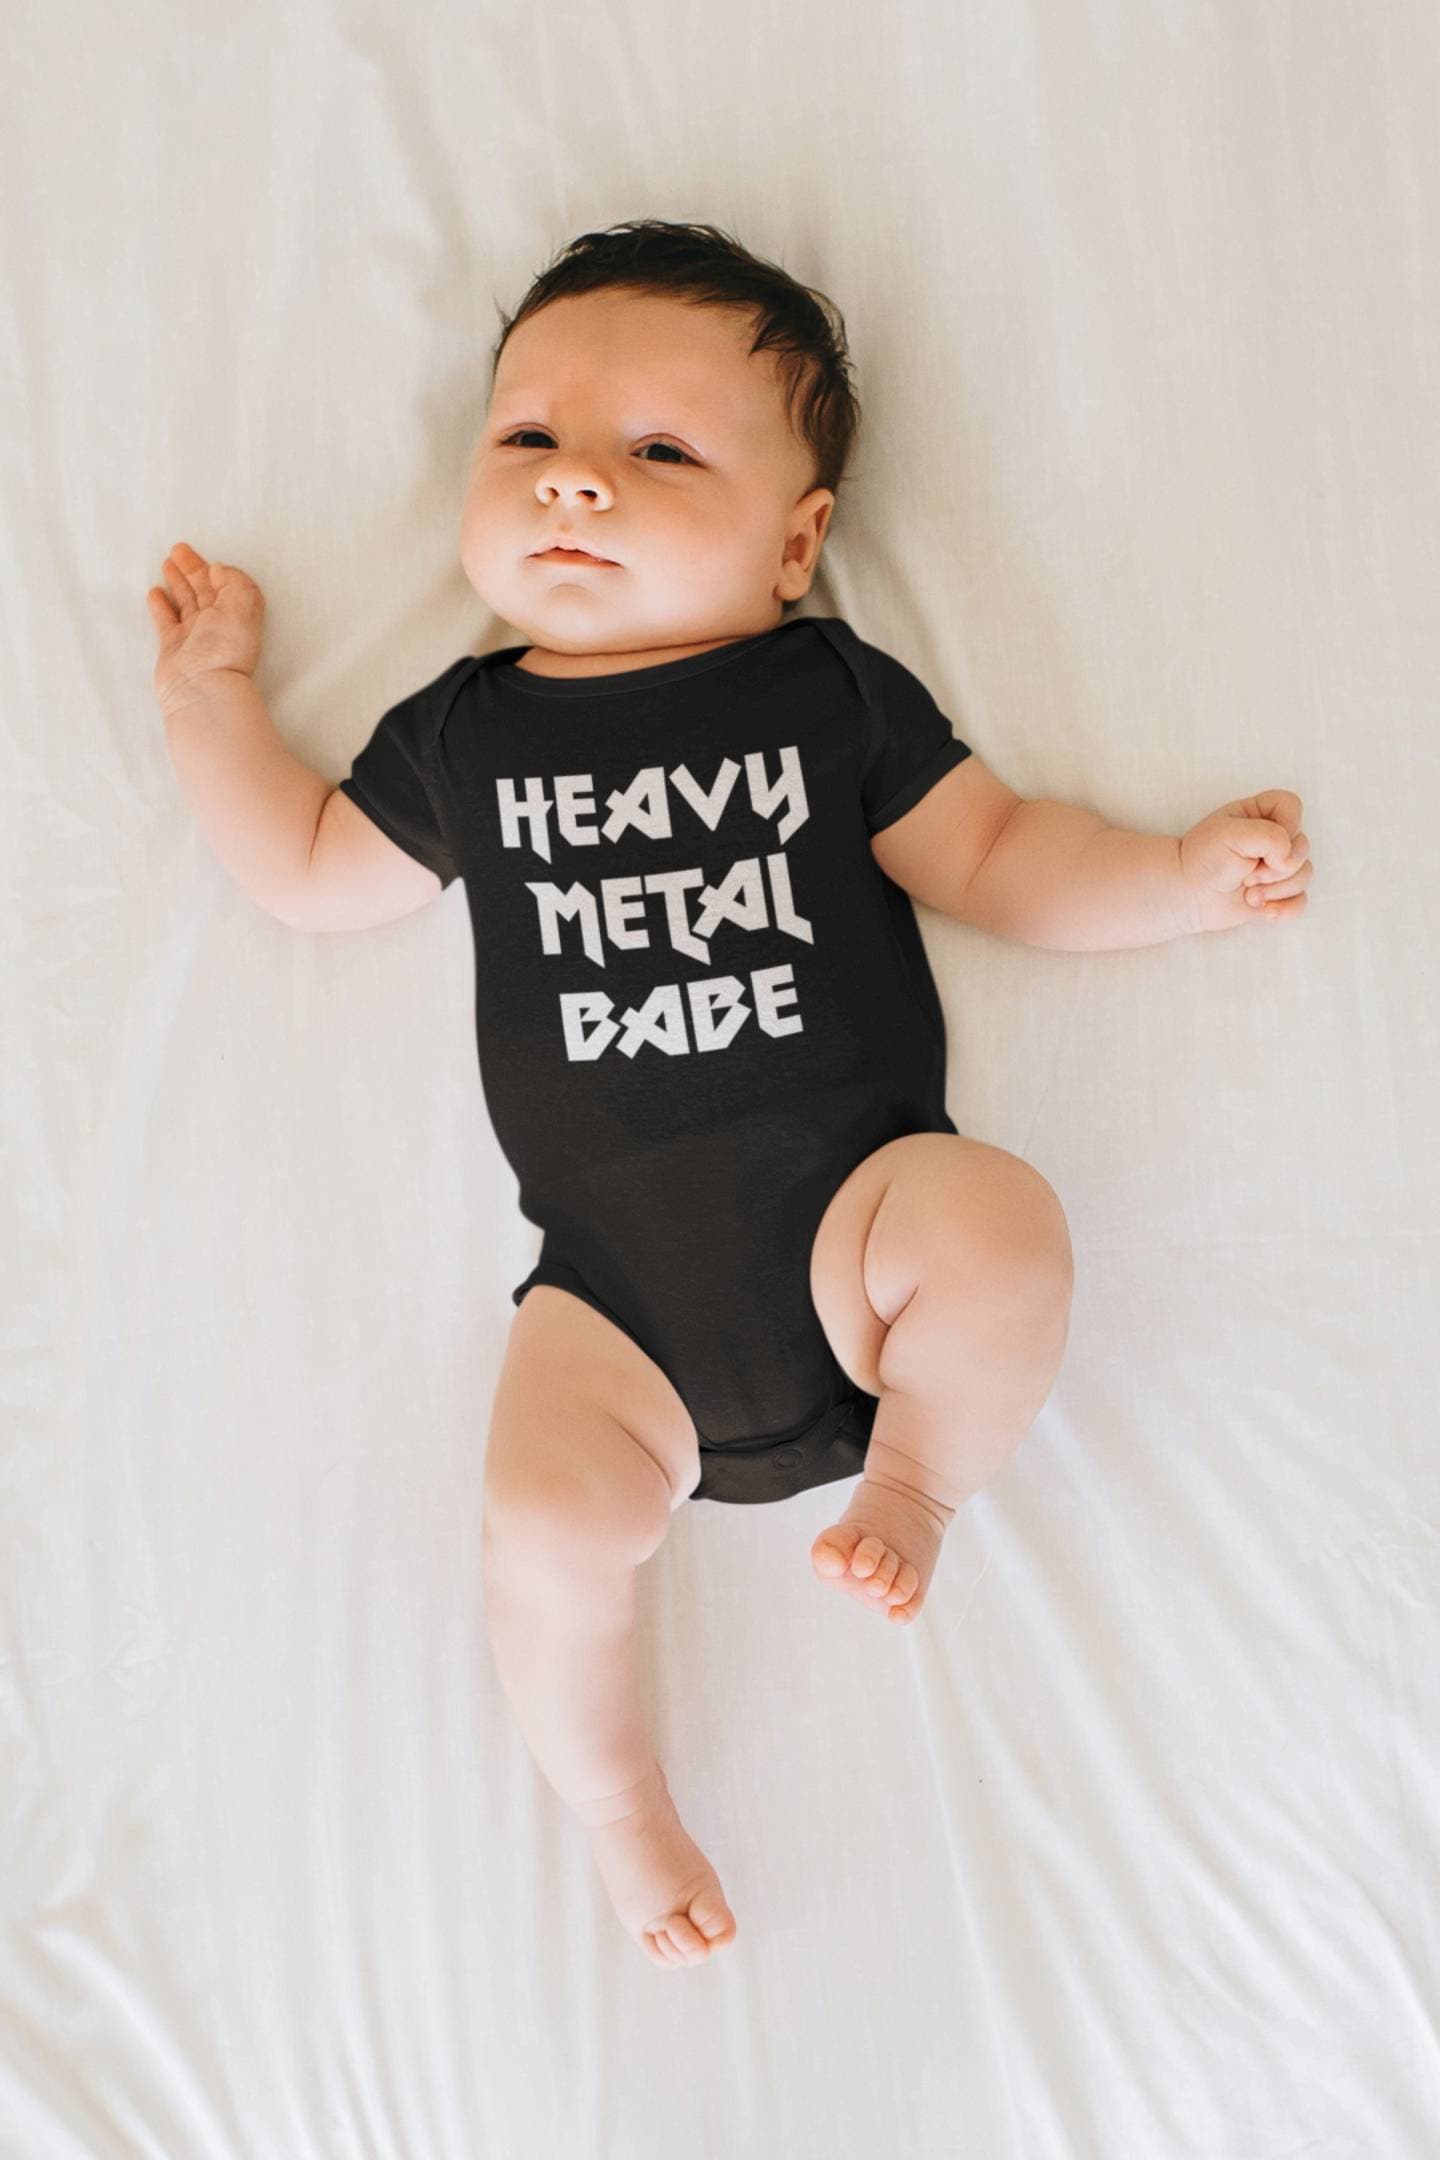 Metal Baby Metal Baby Rock N Roll Baby - Etsy